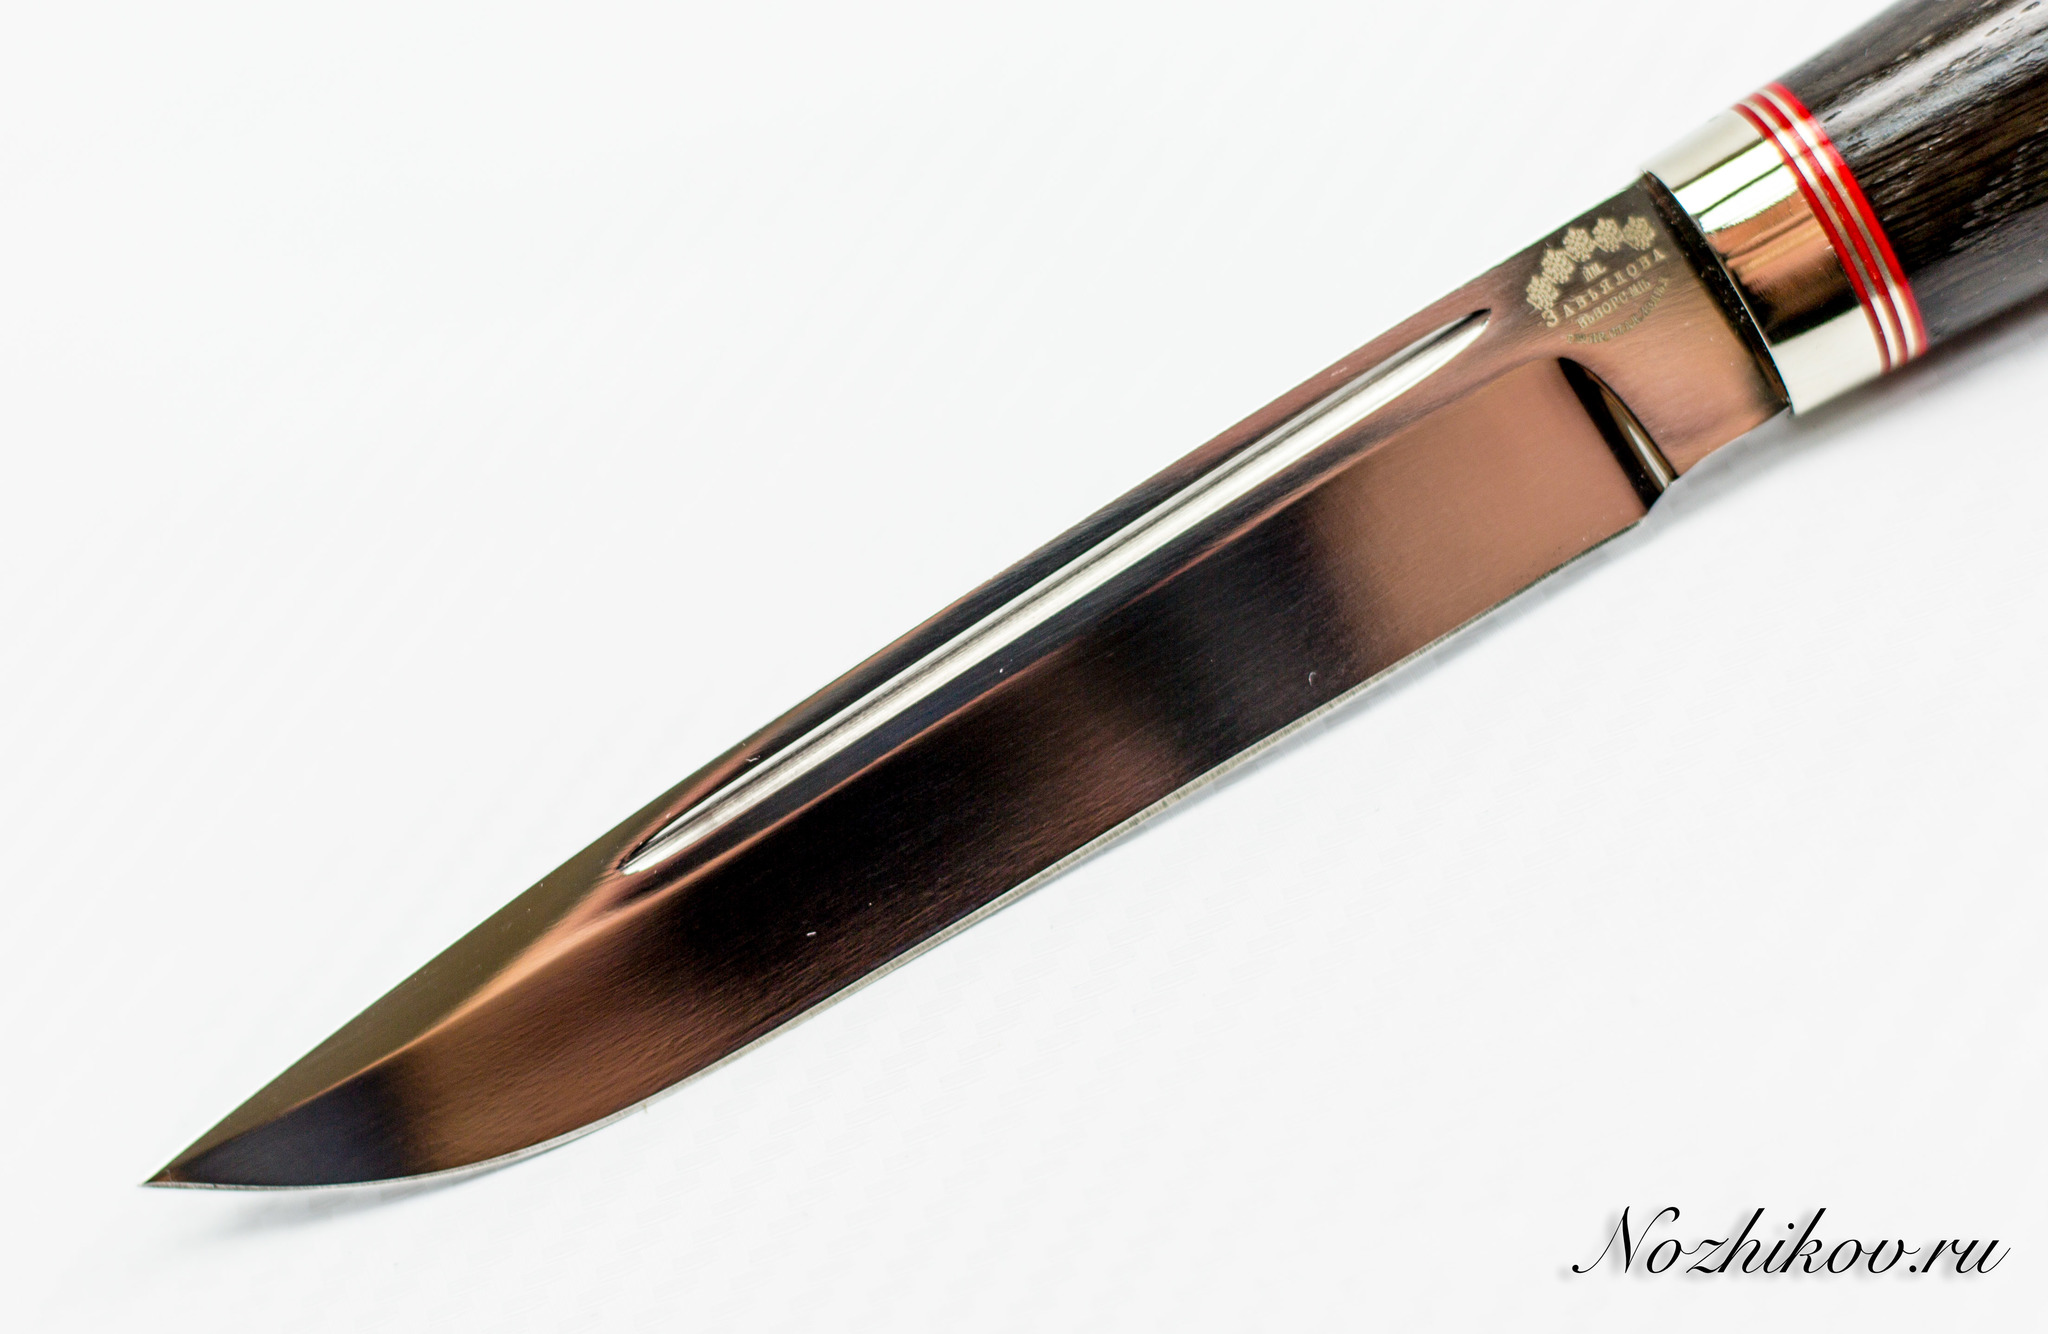 Нож финка из стали Sliepner с красными вставками - фото 3